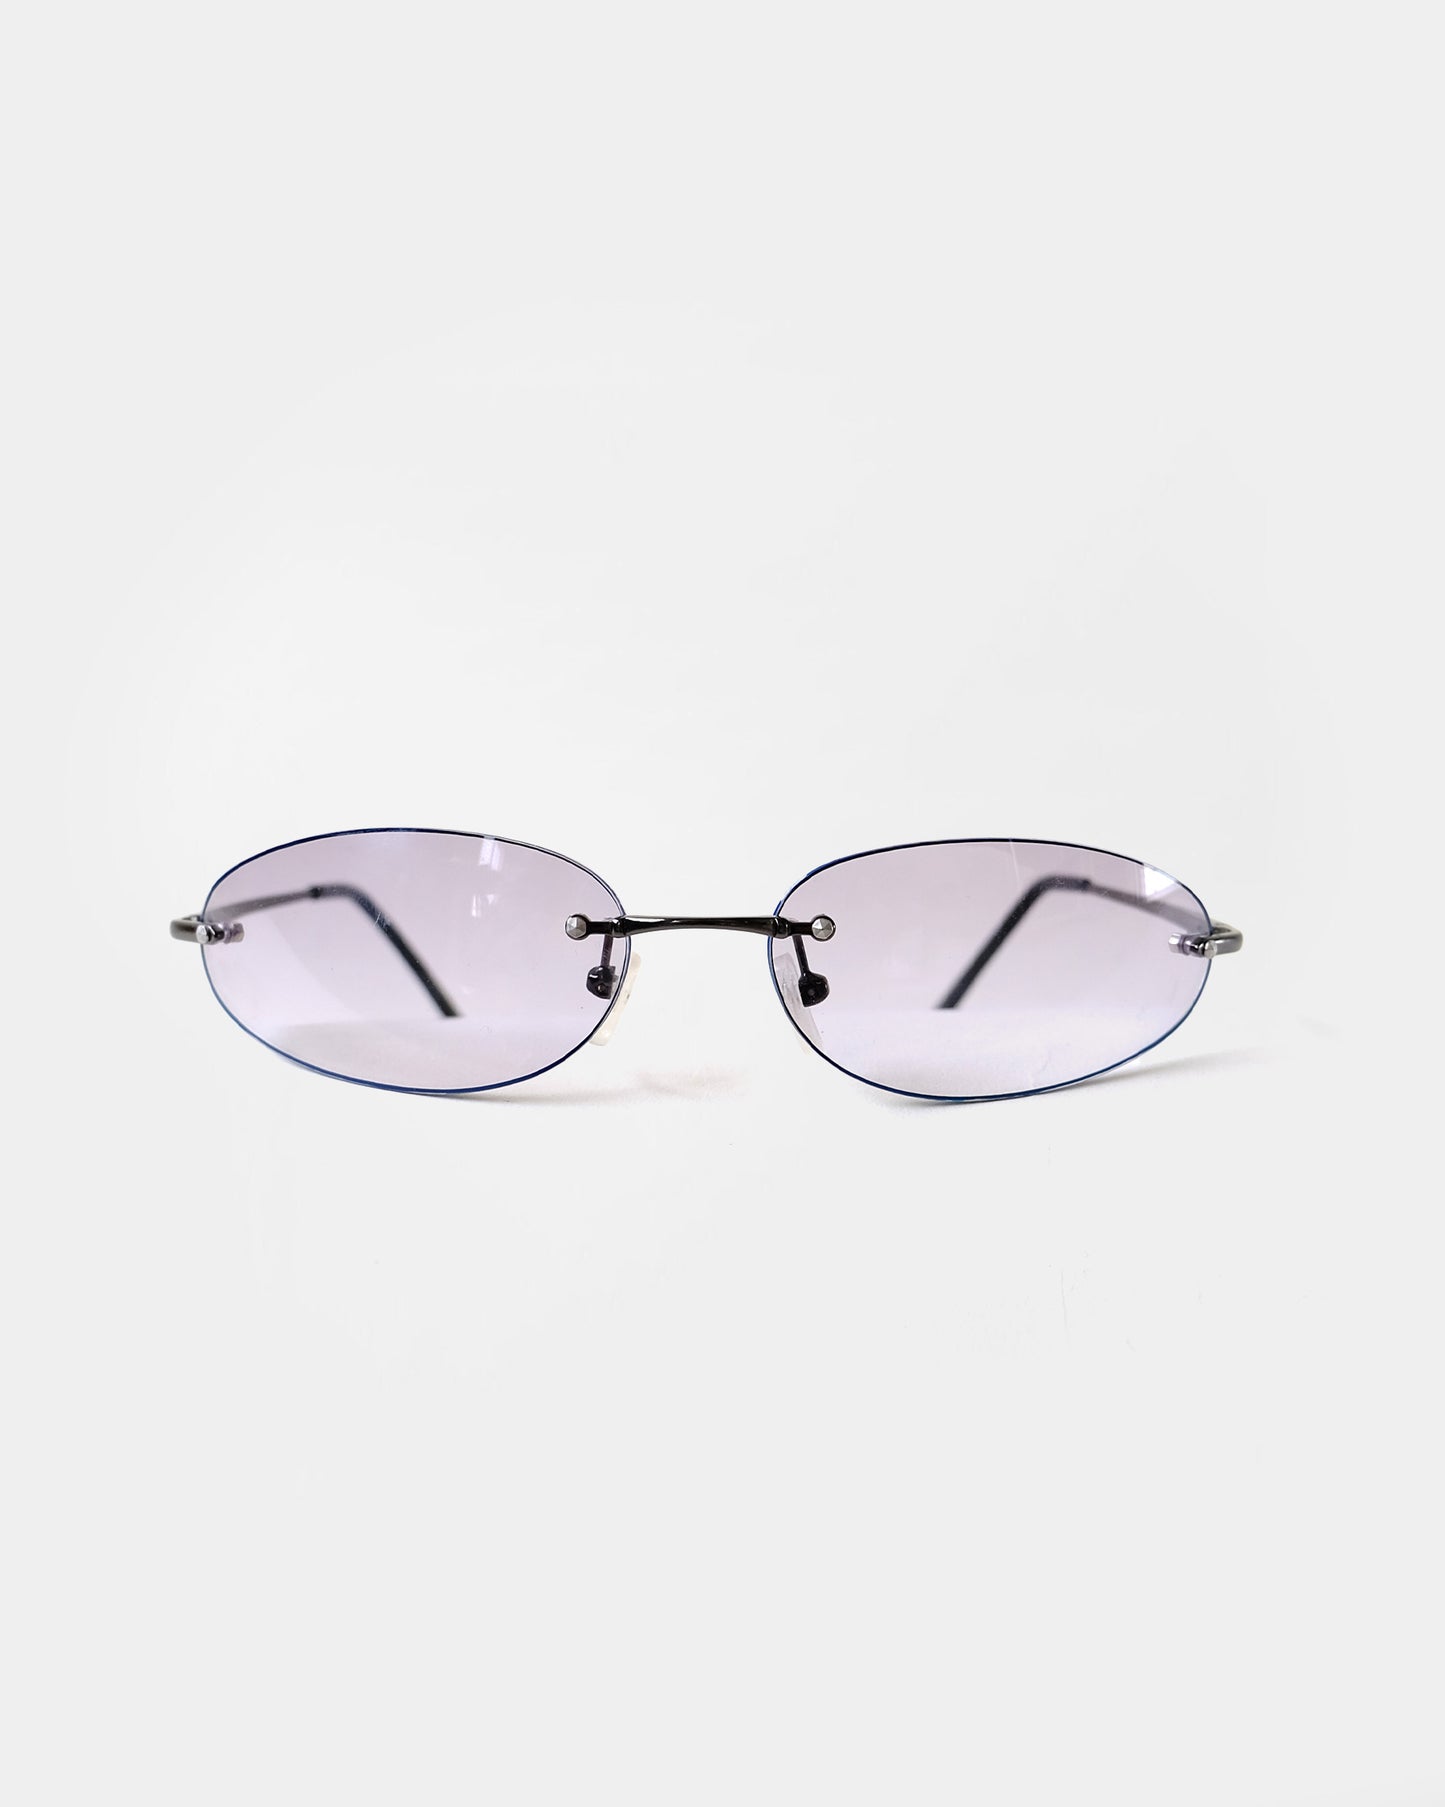 NOS 90s Frameless Frame Sunglasses